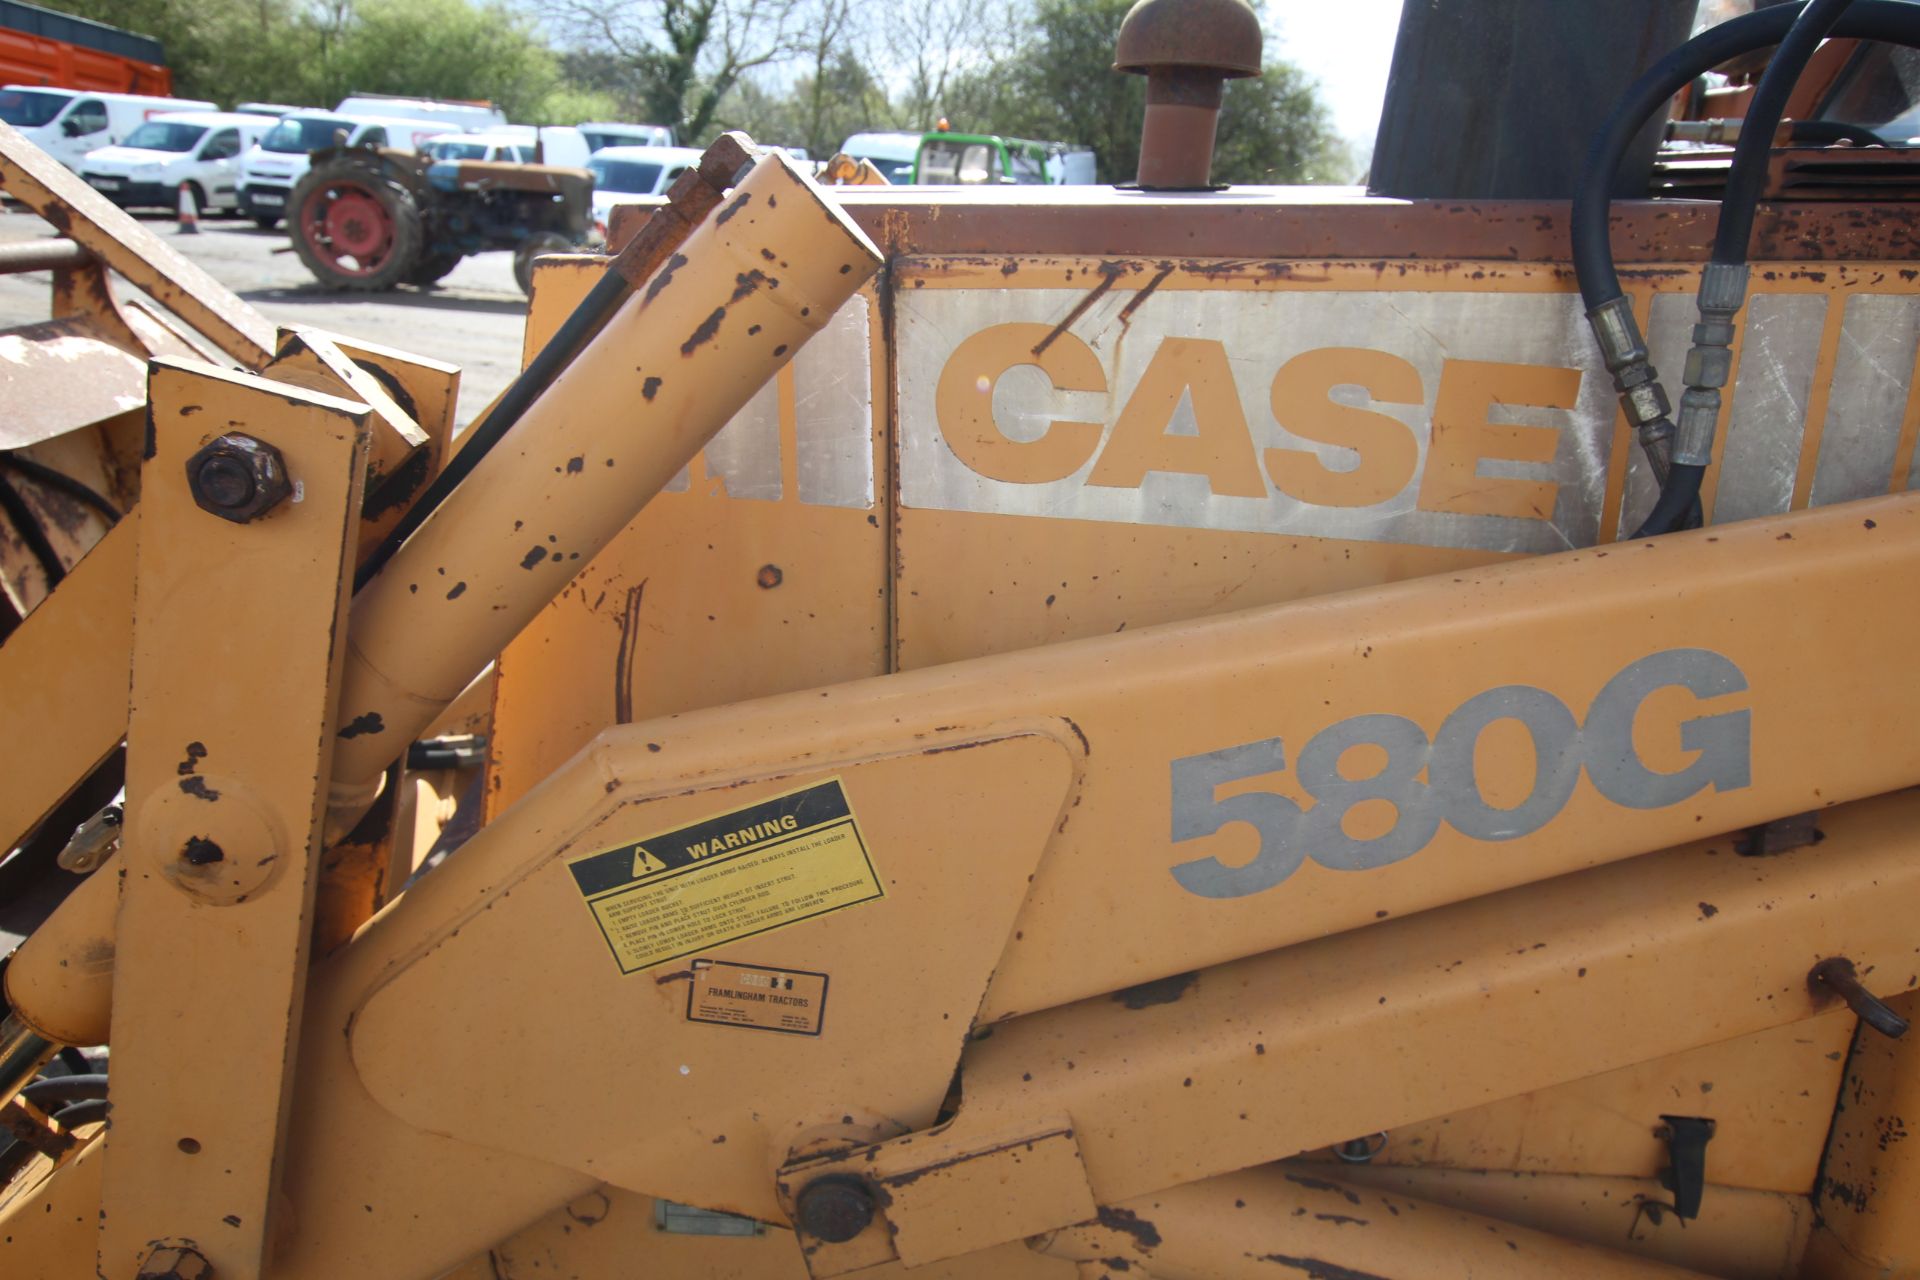 Case 580G Construction King 4WD backhoe loader. Registration D187 KKL. Date of first registration - Image 11 of 68